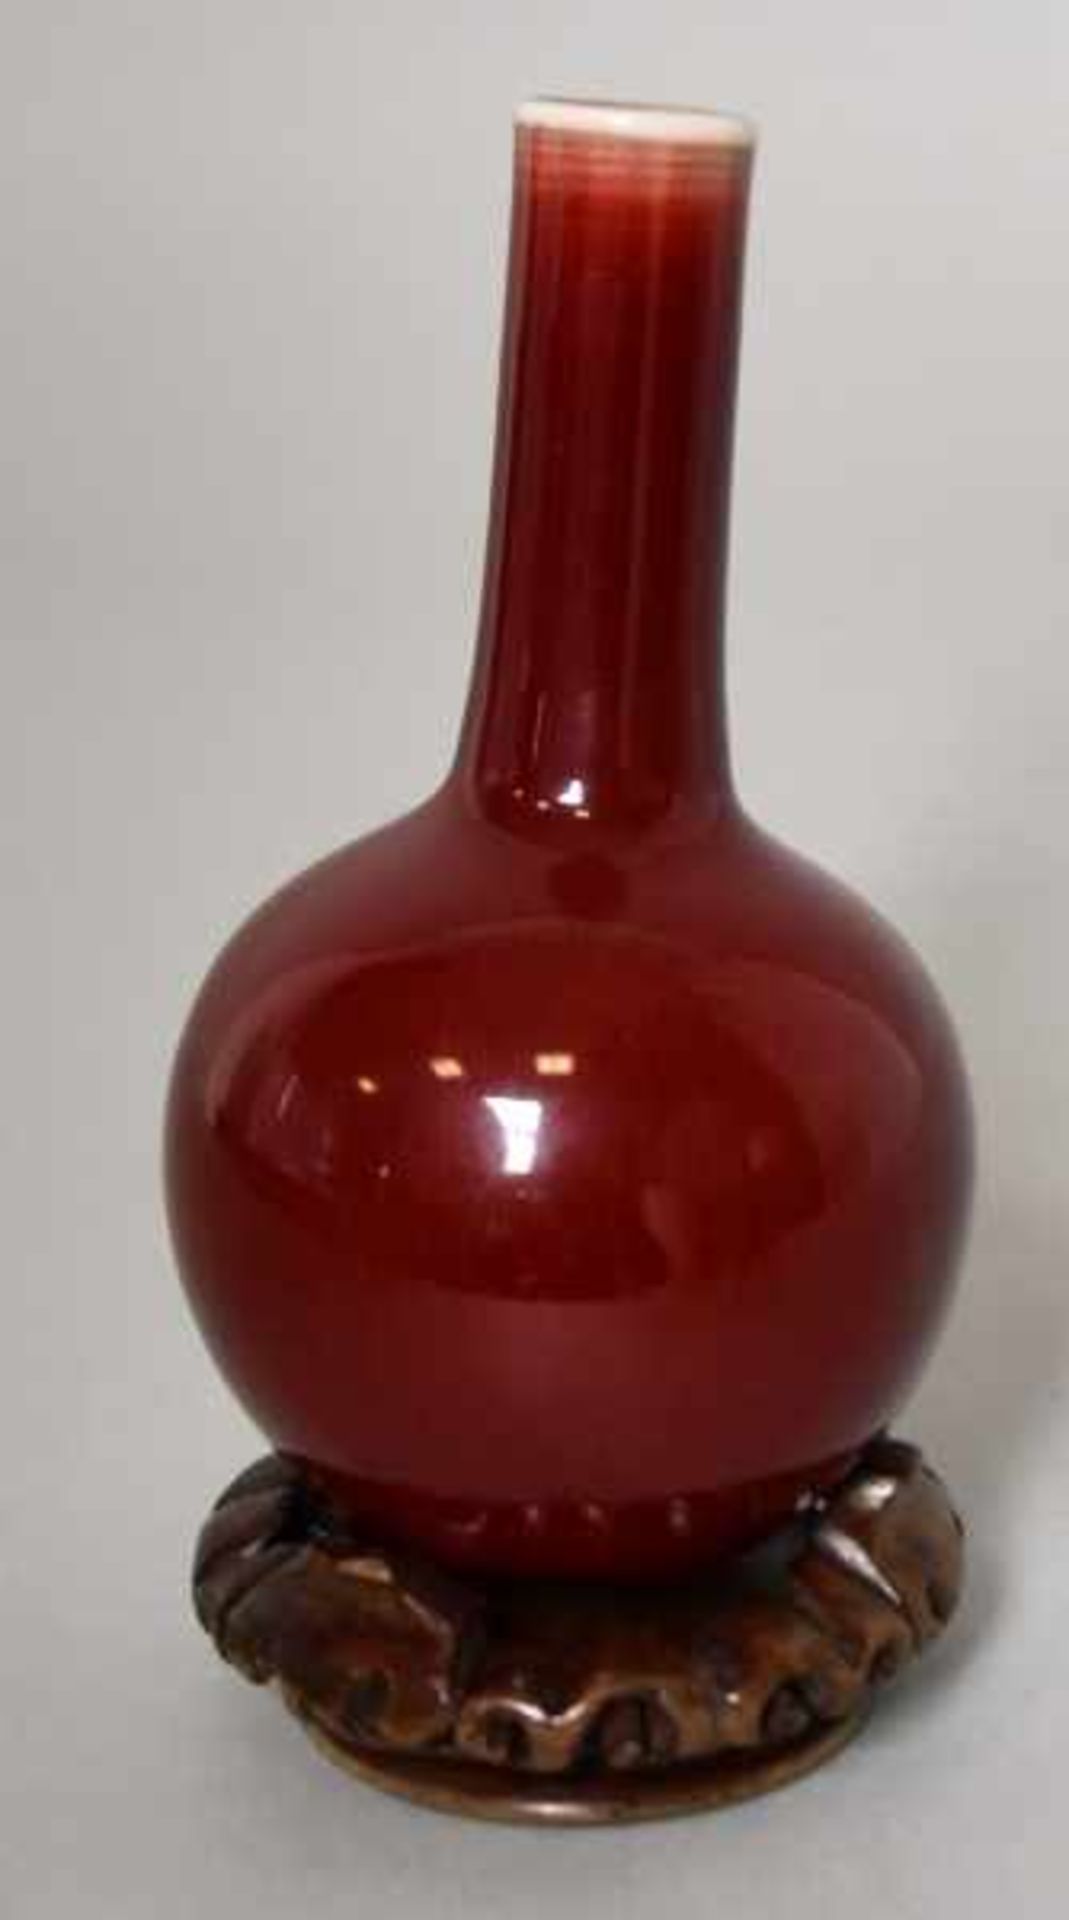 KLEINE VASE gebaucht mit langem Hals, Ochsenblut-Glasur, auf Porzellan, auf Holzuntersatz, H 14